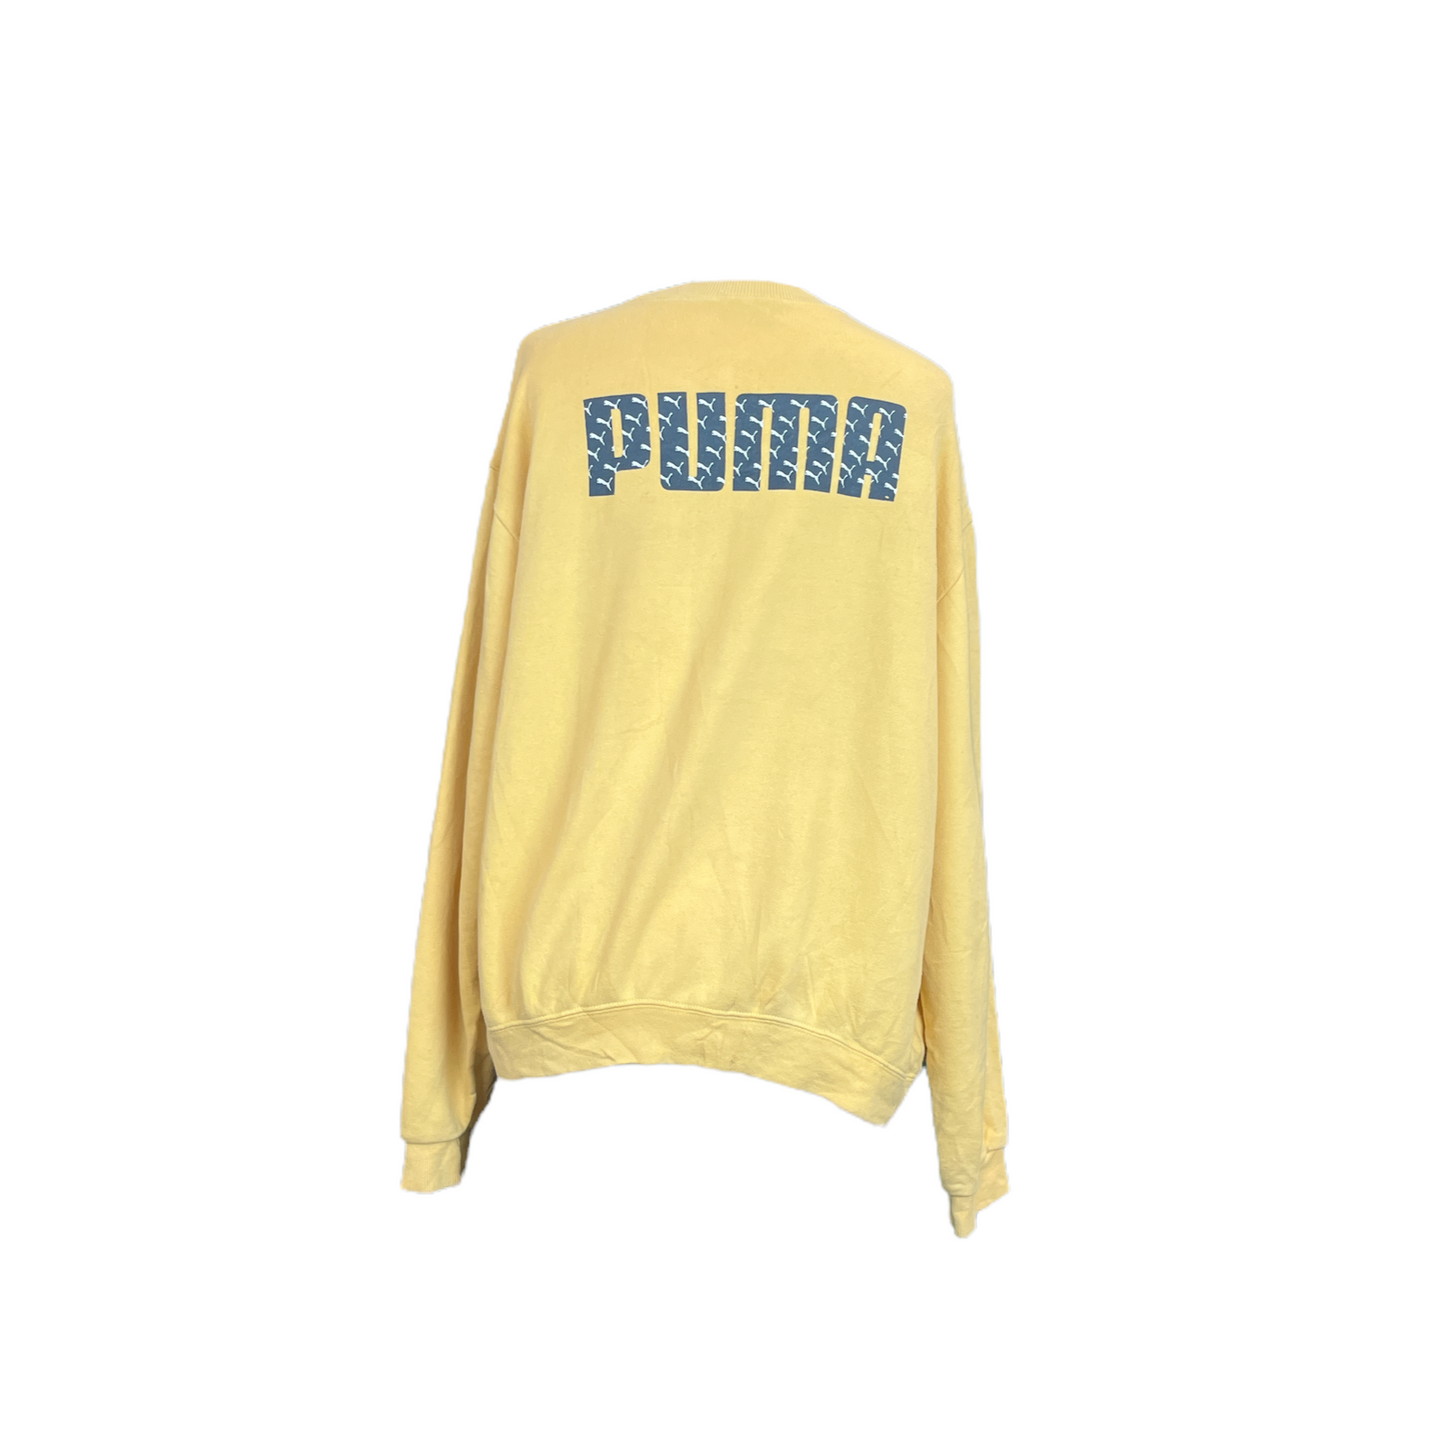 Womens Puma Sweater - L